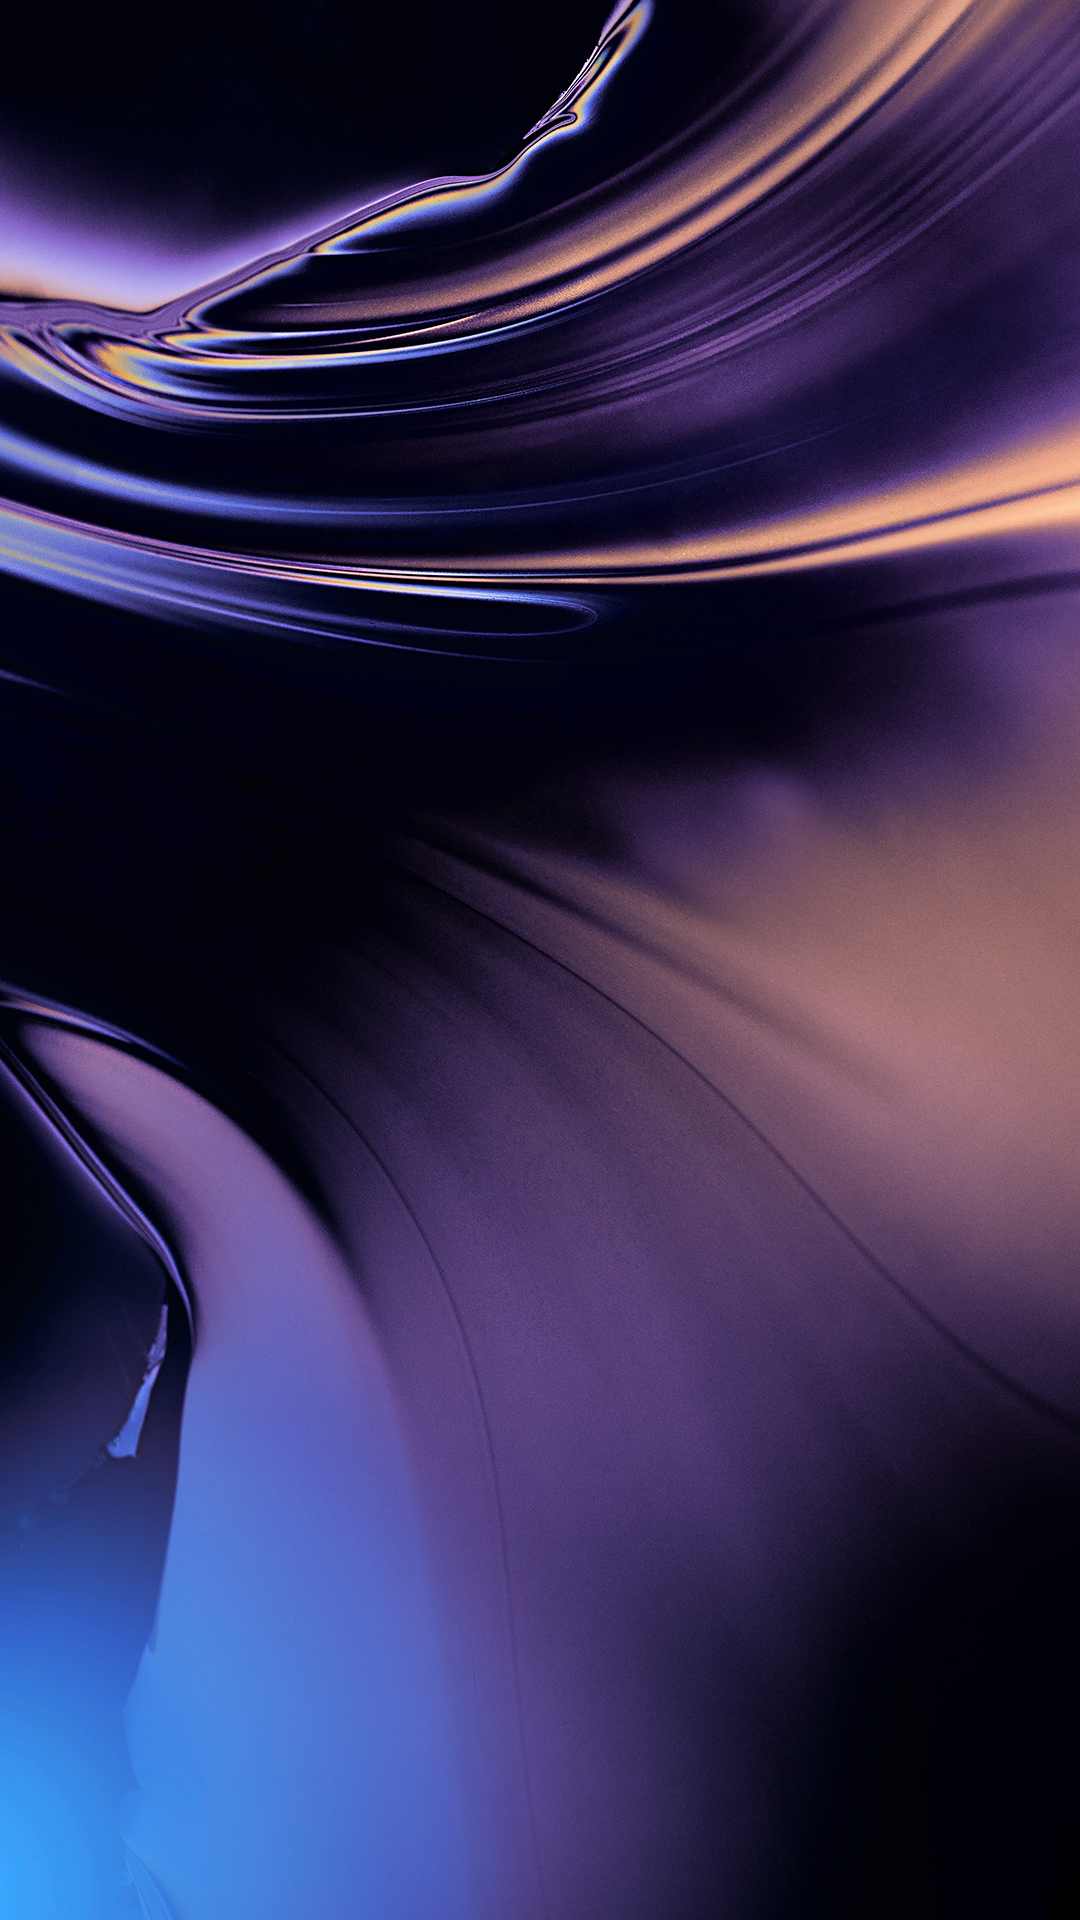 mac wallpaper für das iphone,blau,lila,violett,cg kunstwerk,elektrisches blau